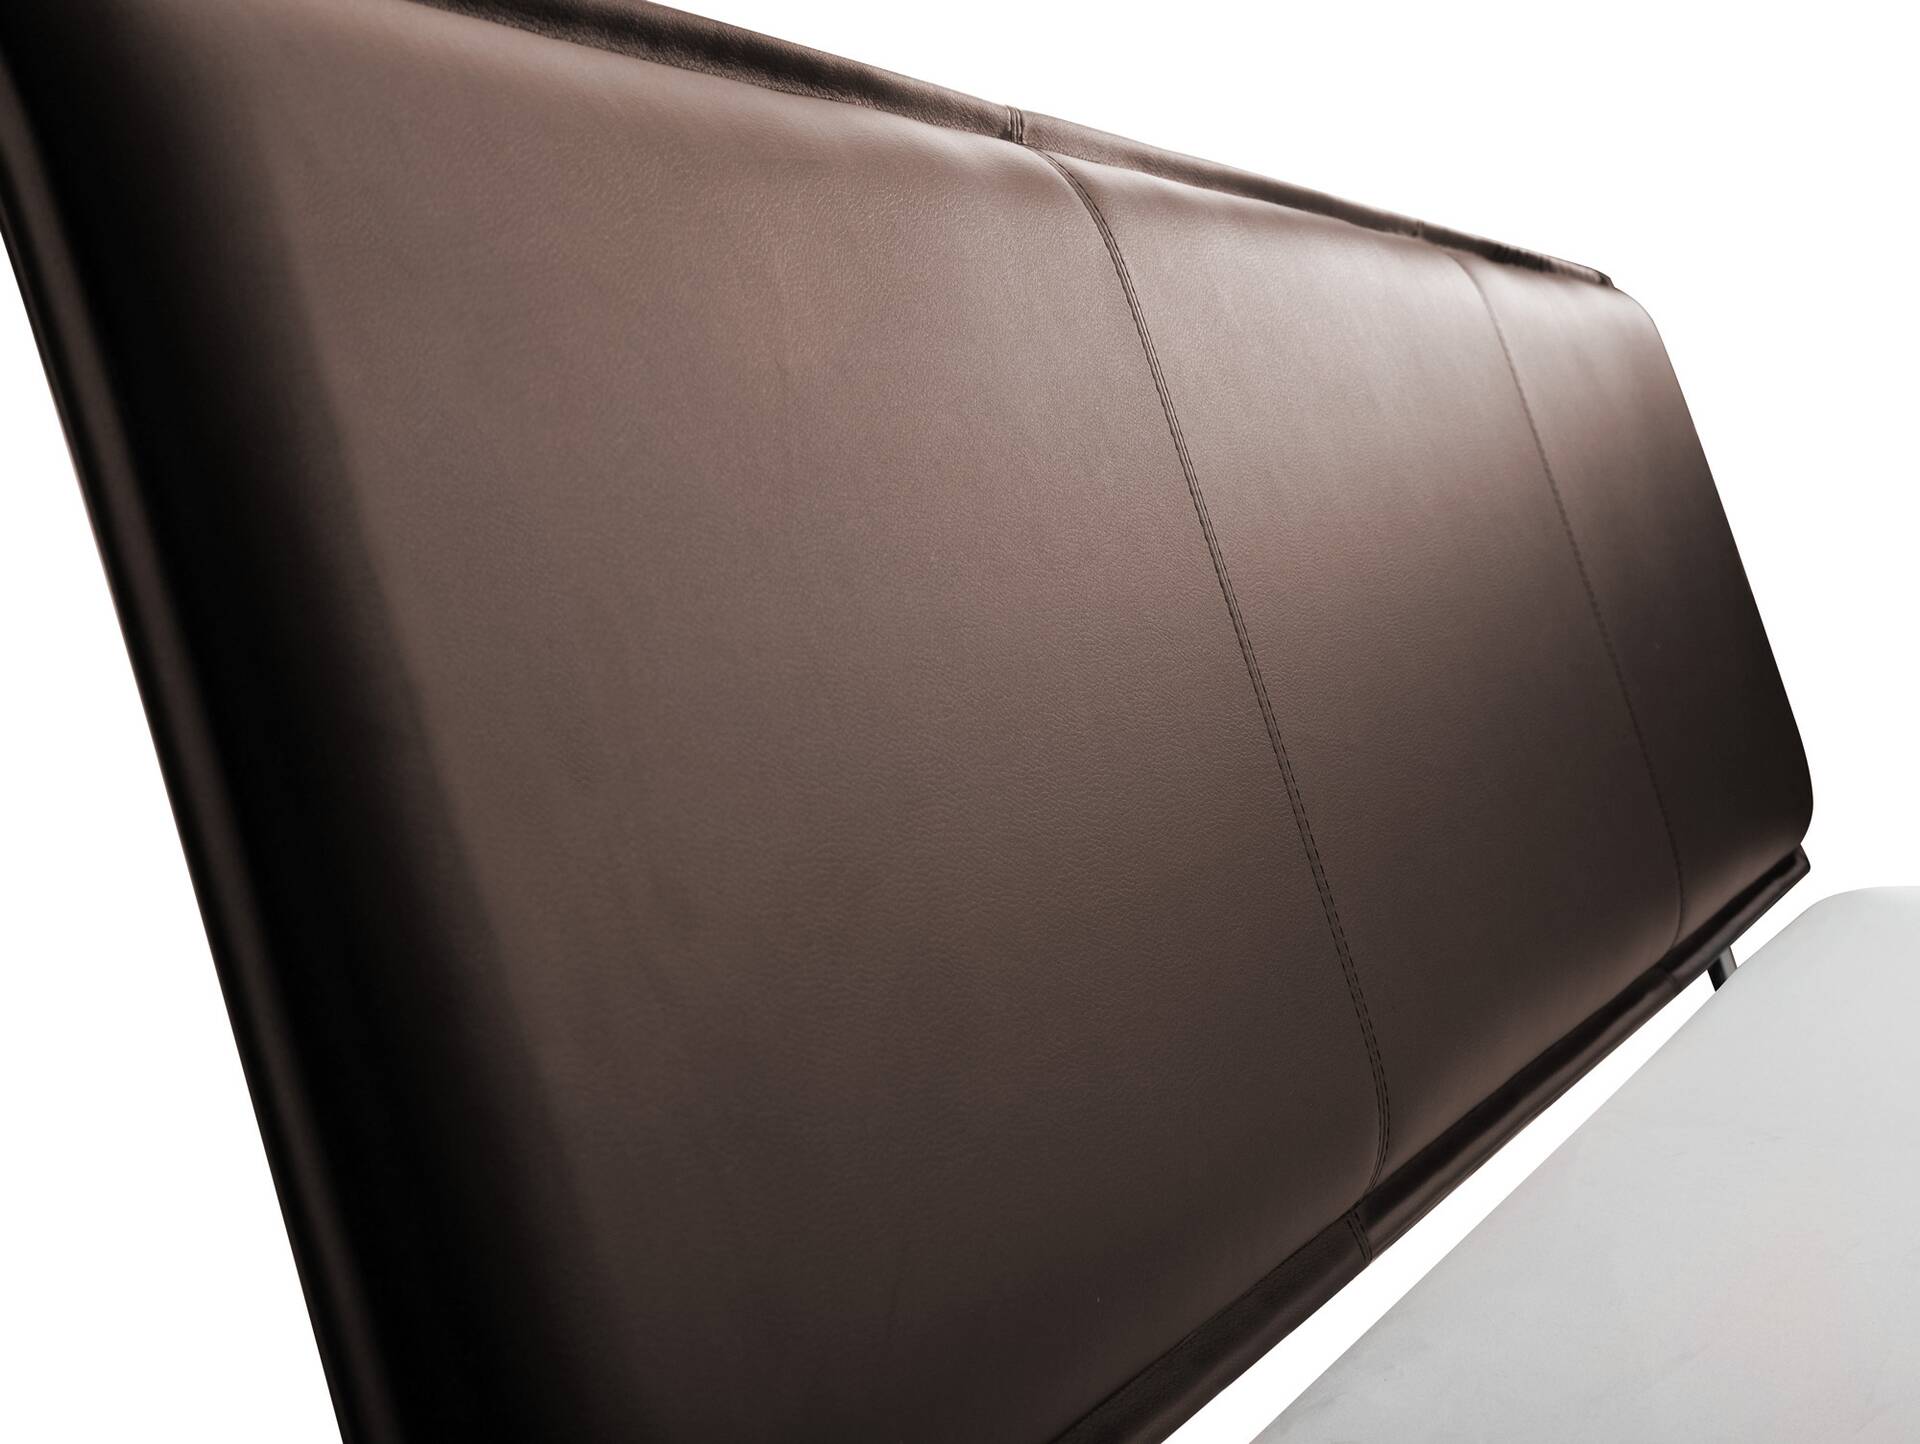 LUKY Bett Metallfuß, mit Polsterkopfteil, Material Massivholz, Fichte massiv 180 x 220 cm | weiss | Kunstleder Braun